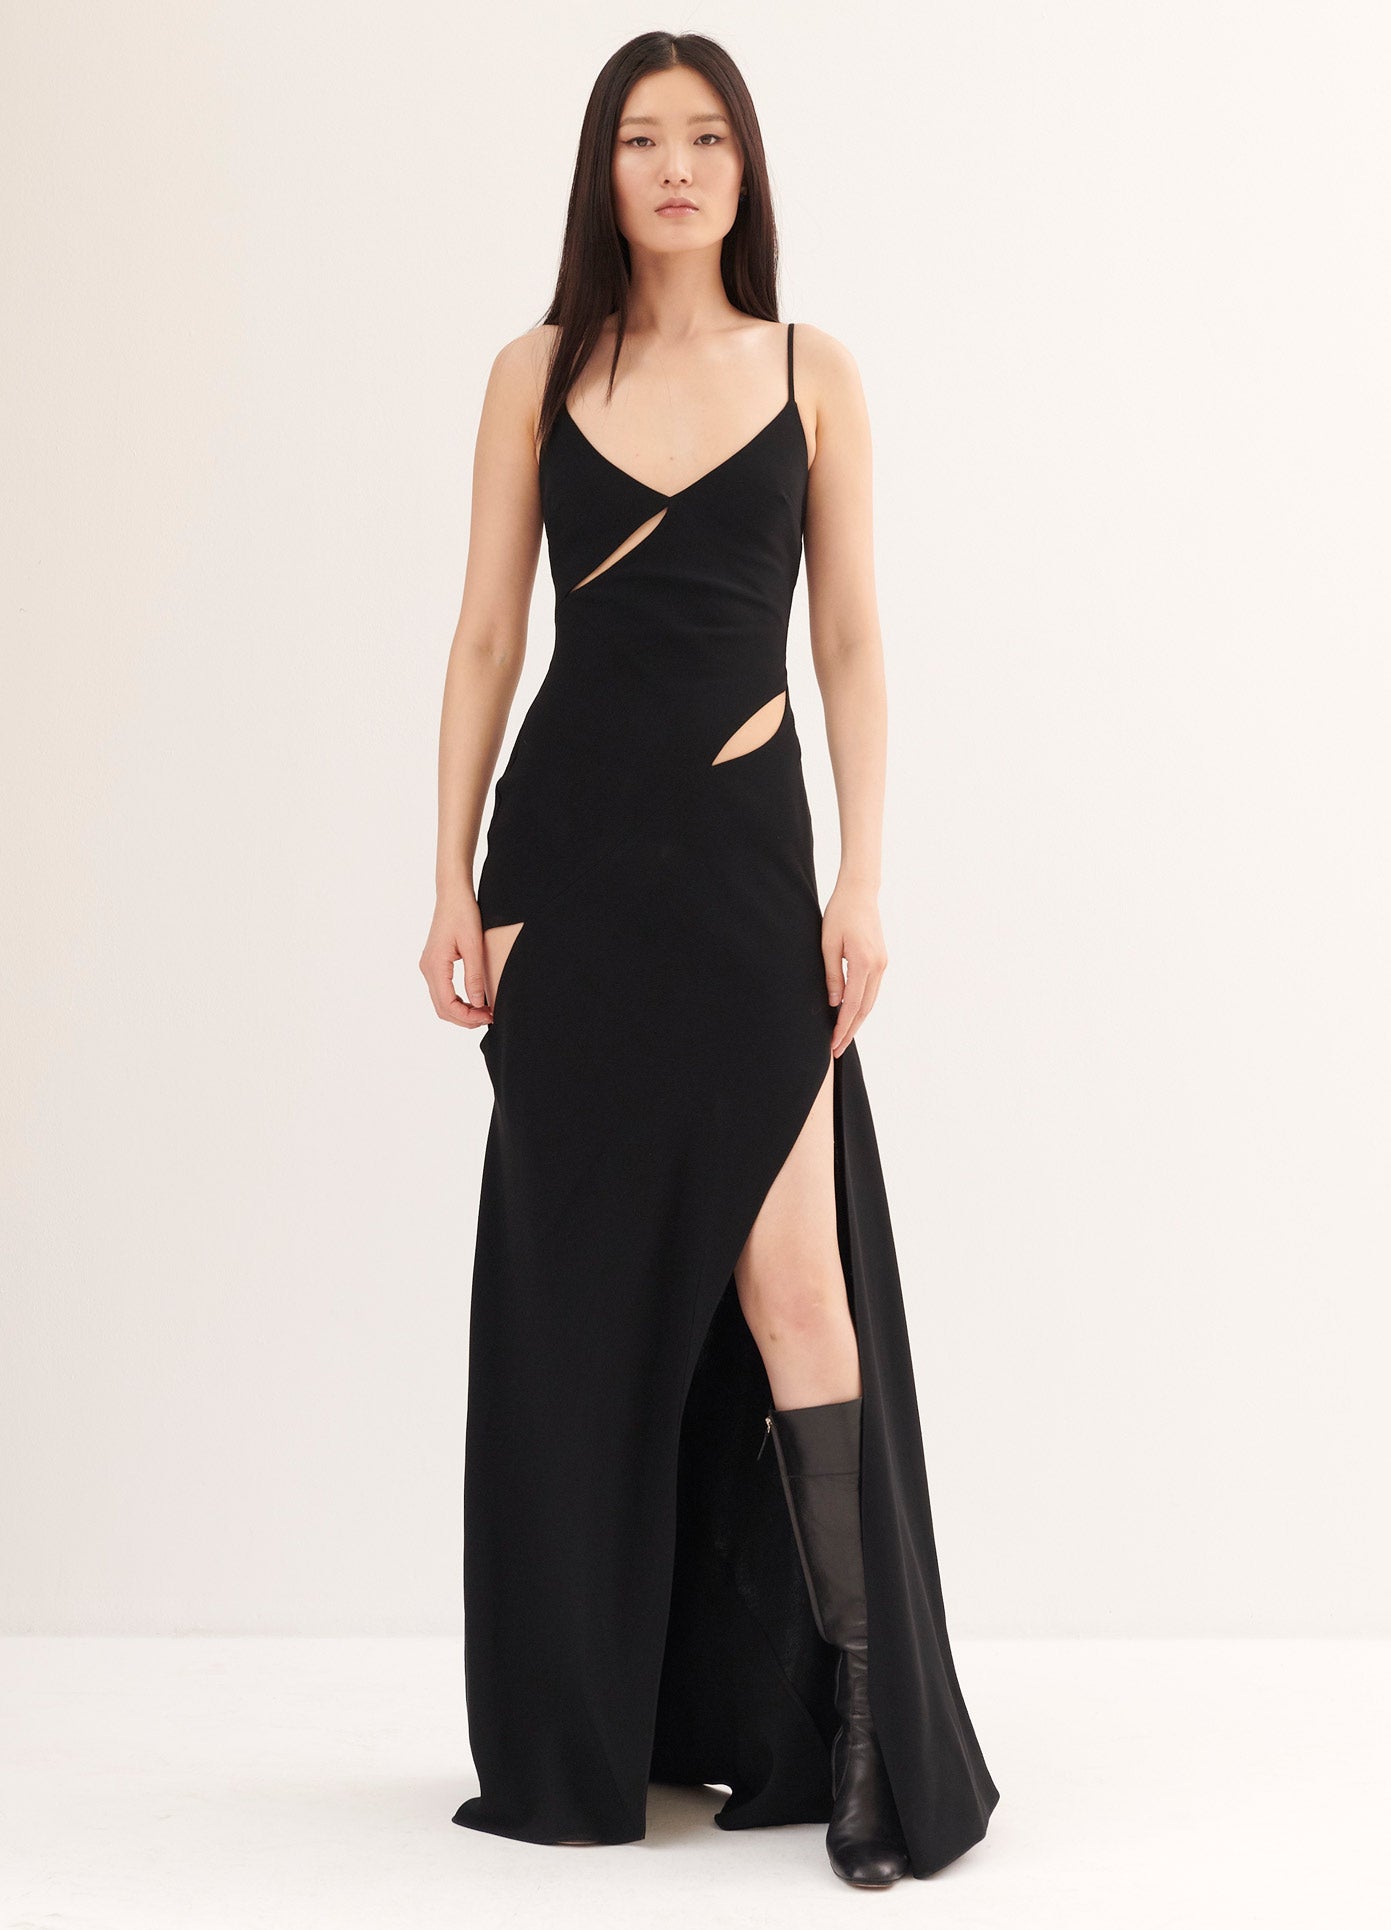 MONSE Slip Dress in Black on Model Full Front View